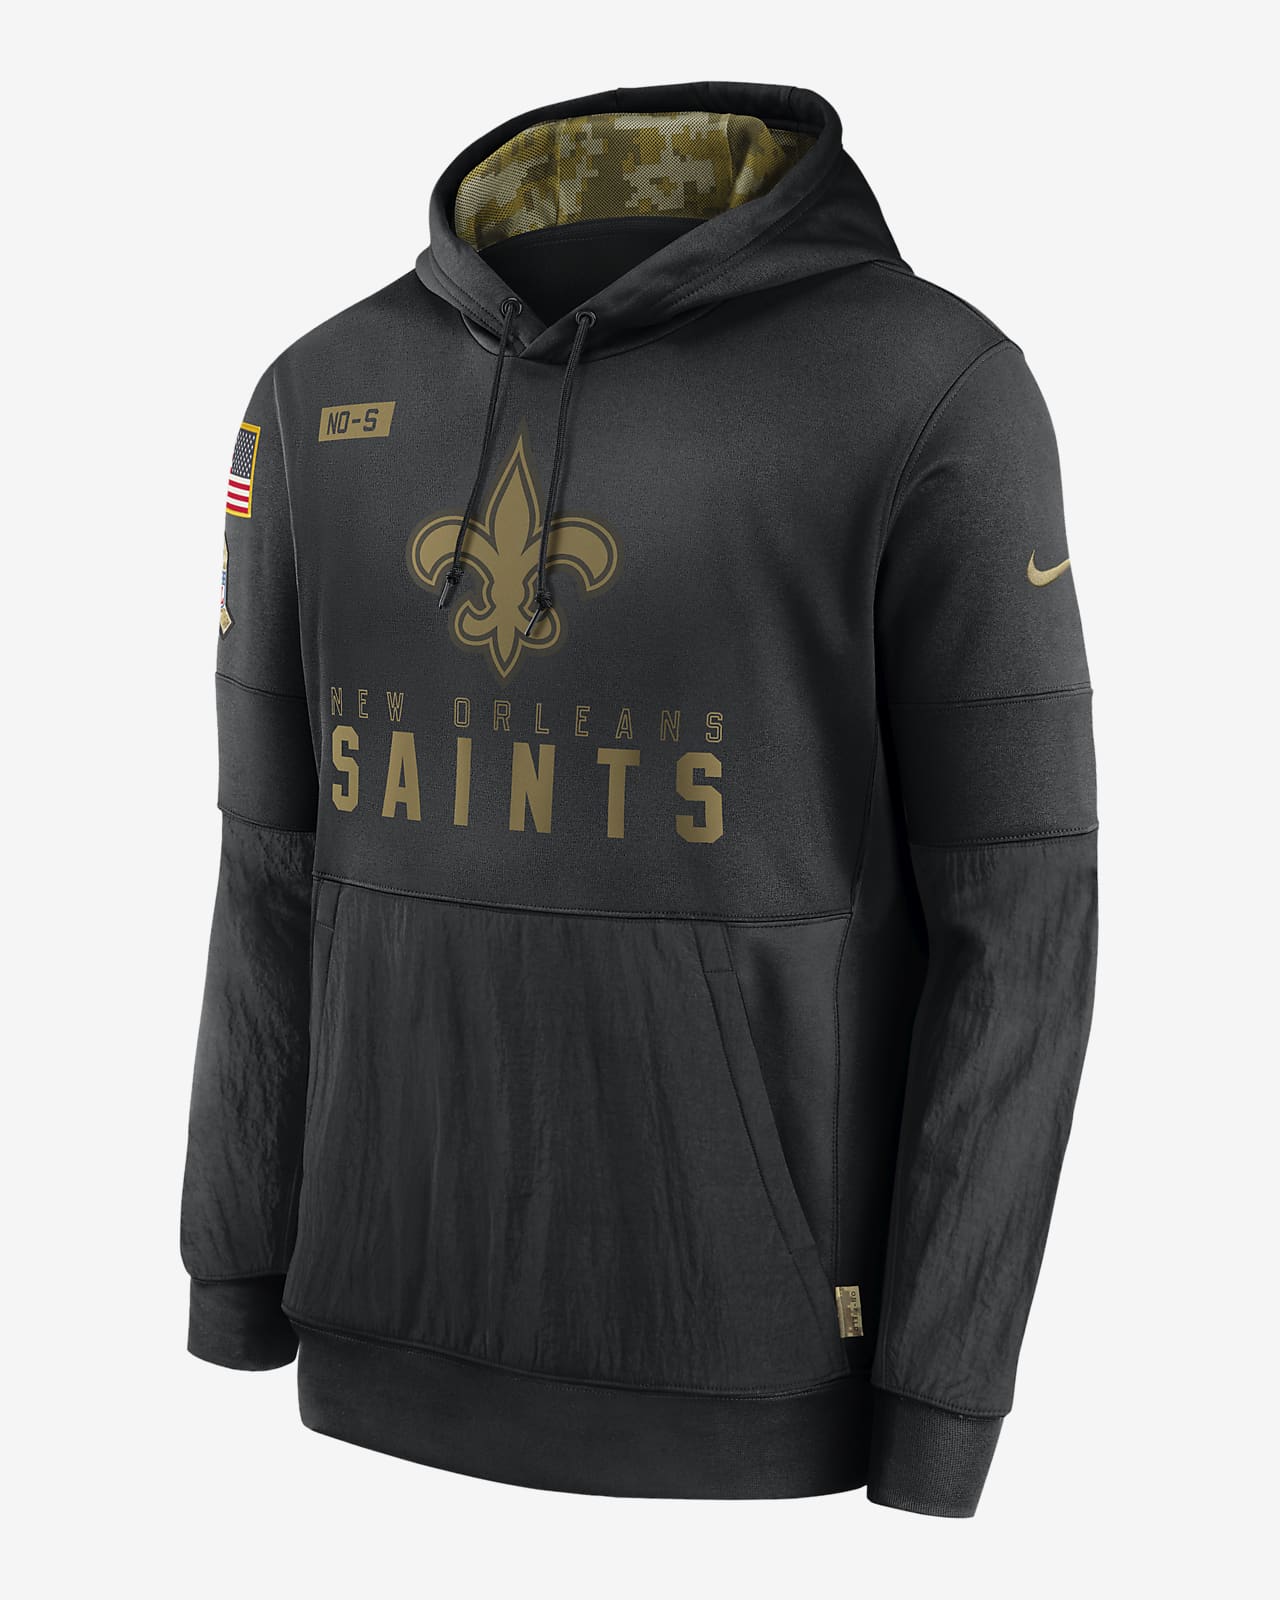 saints nike jacket